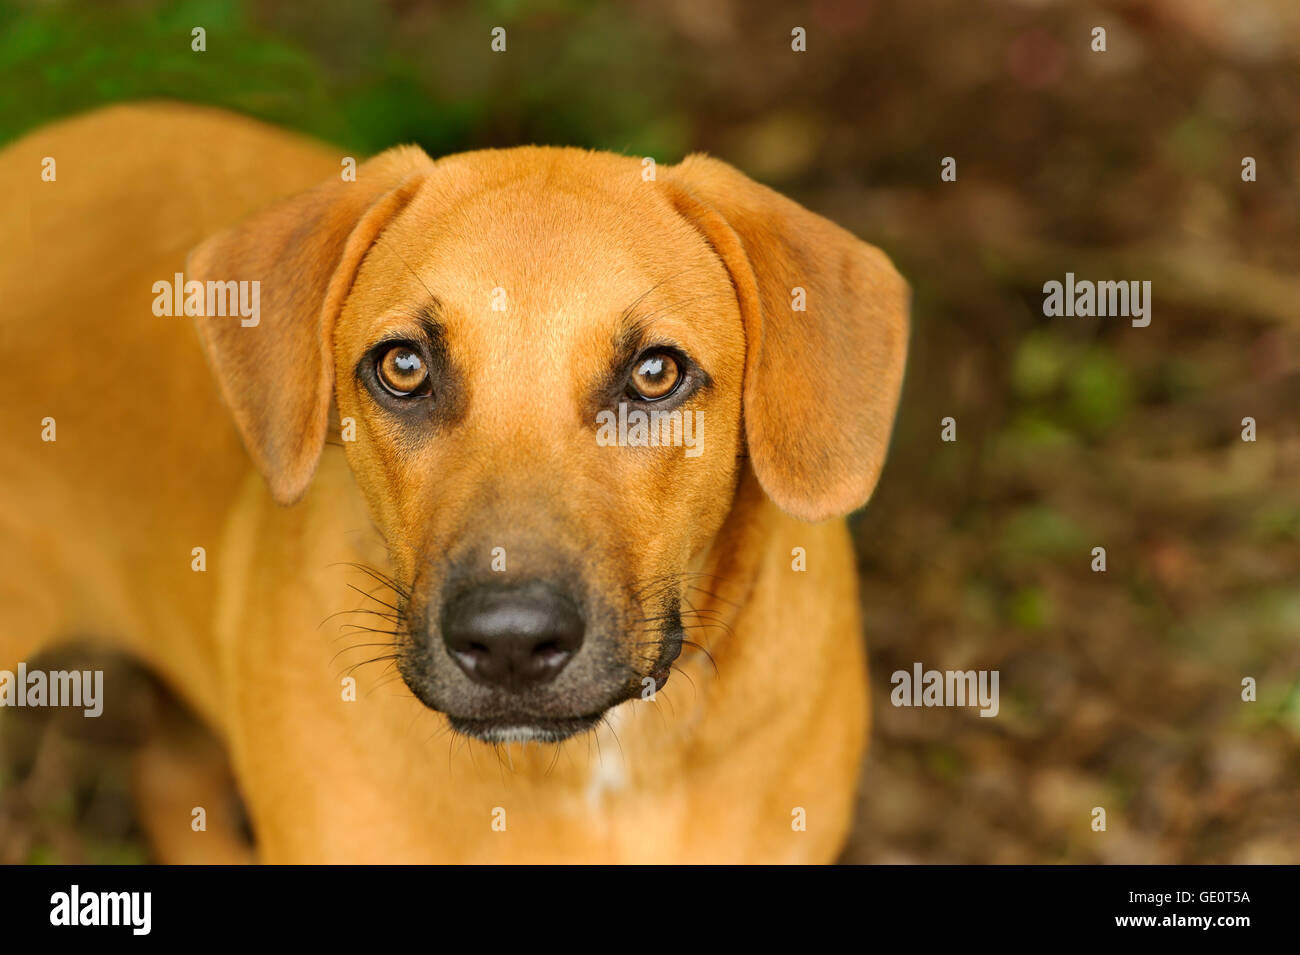 Curieux chien est un gros chien marron jusqu'à la nature en plein air dans un beau cadre. Banque D'Images